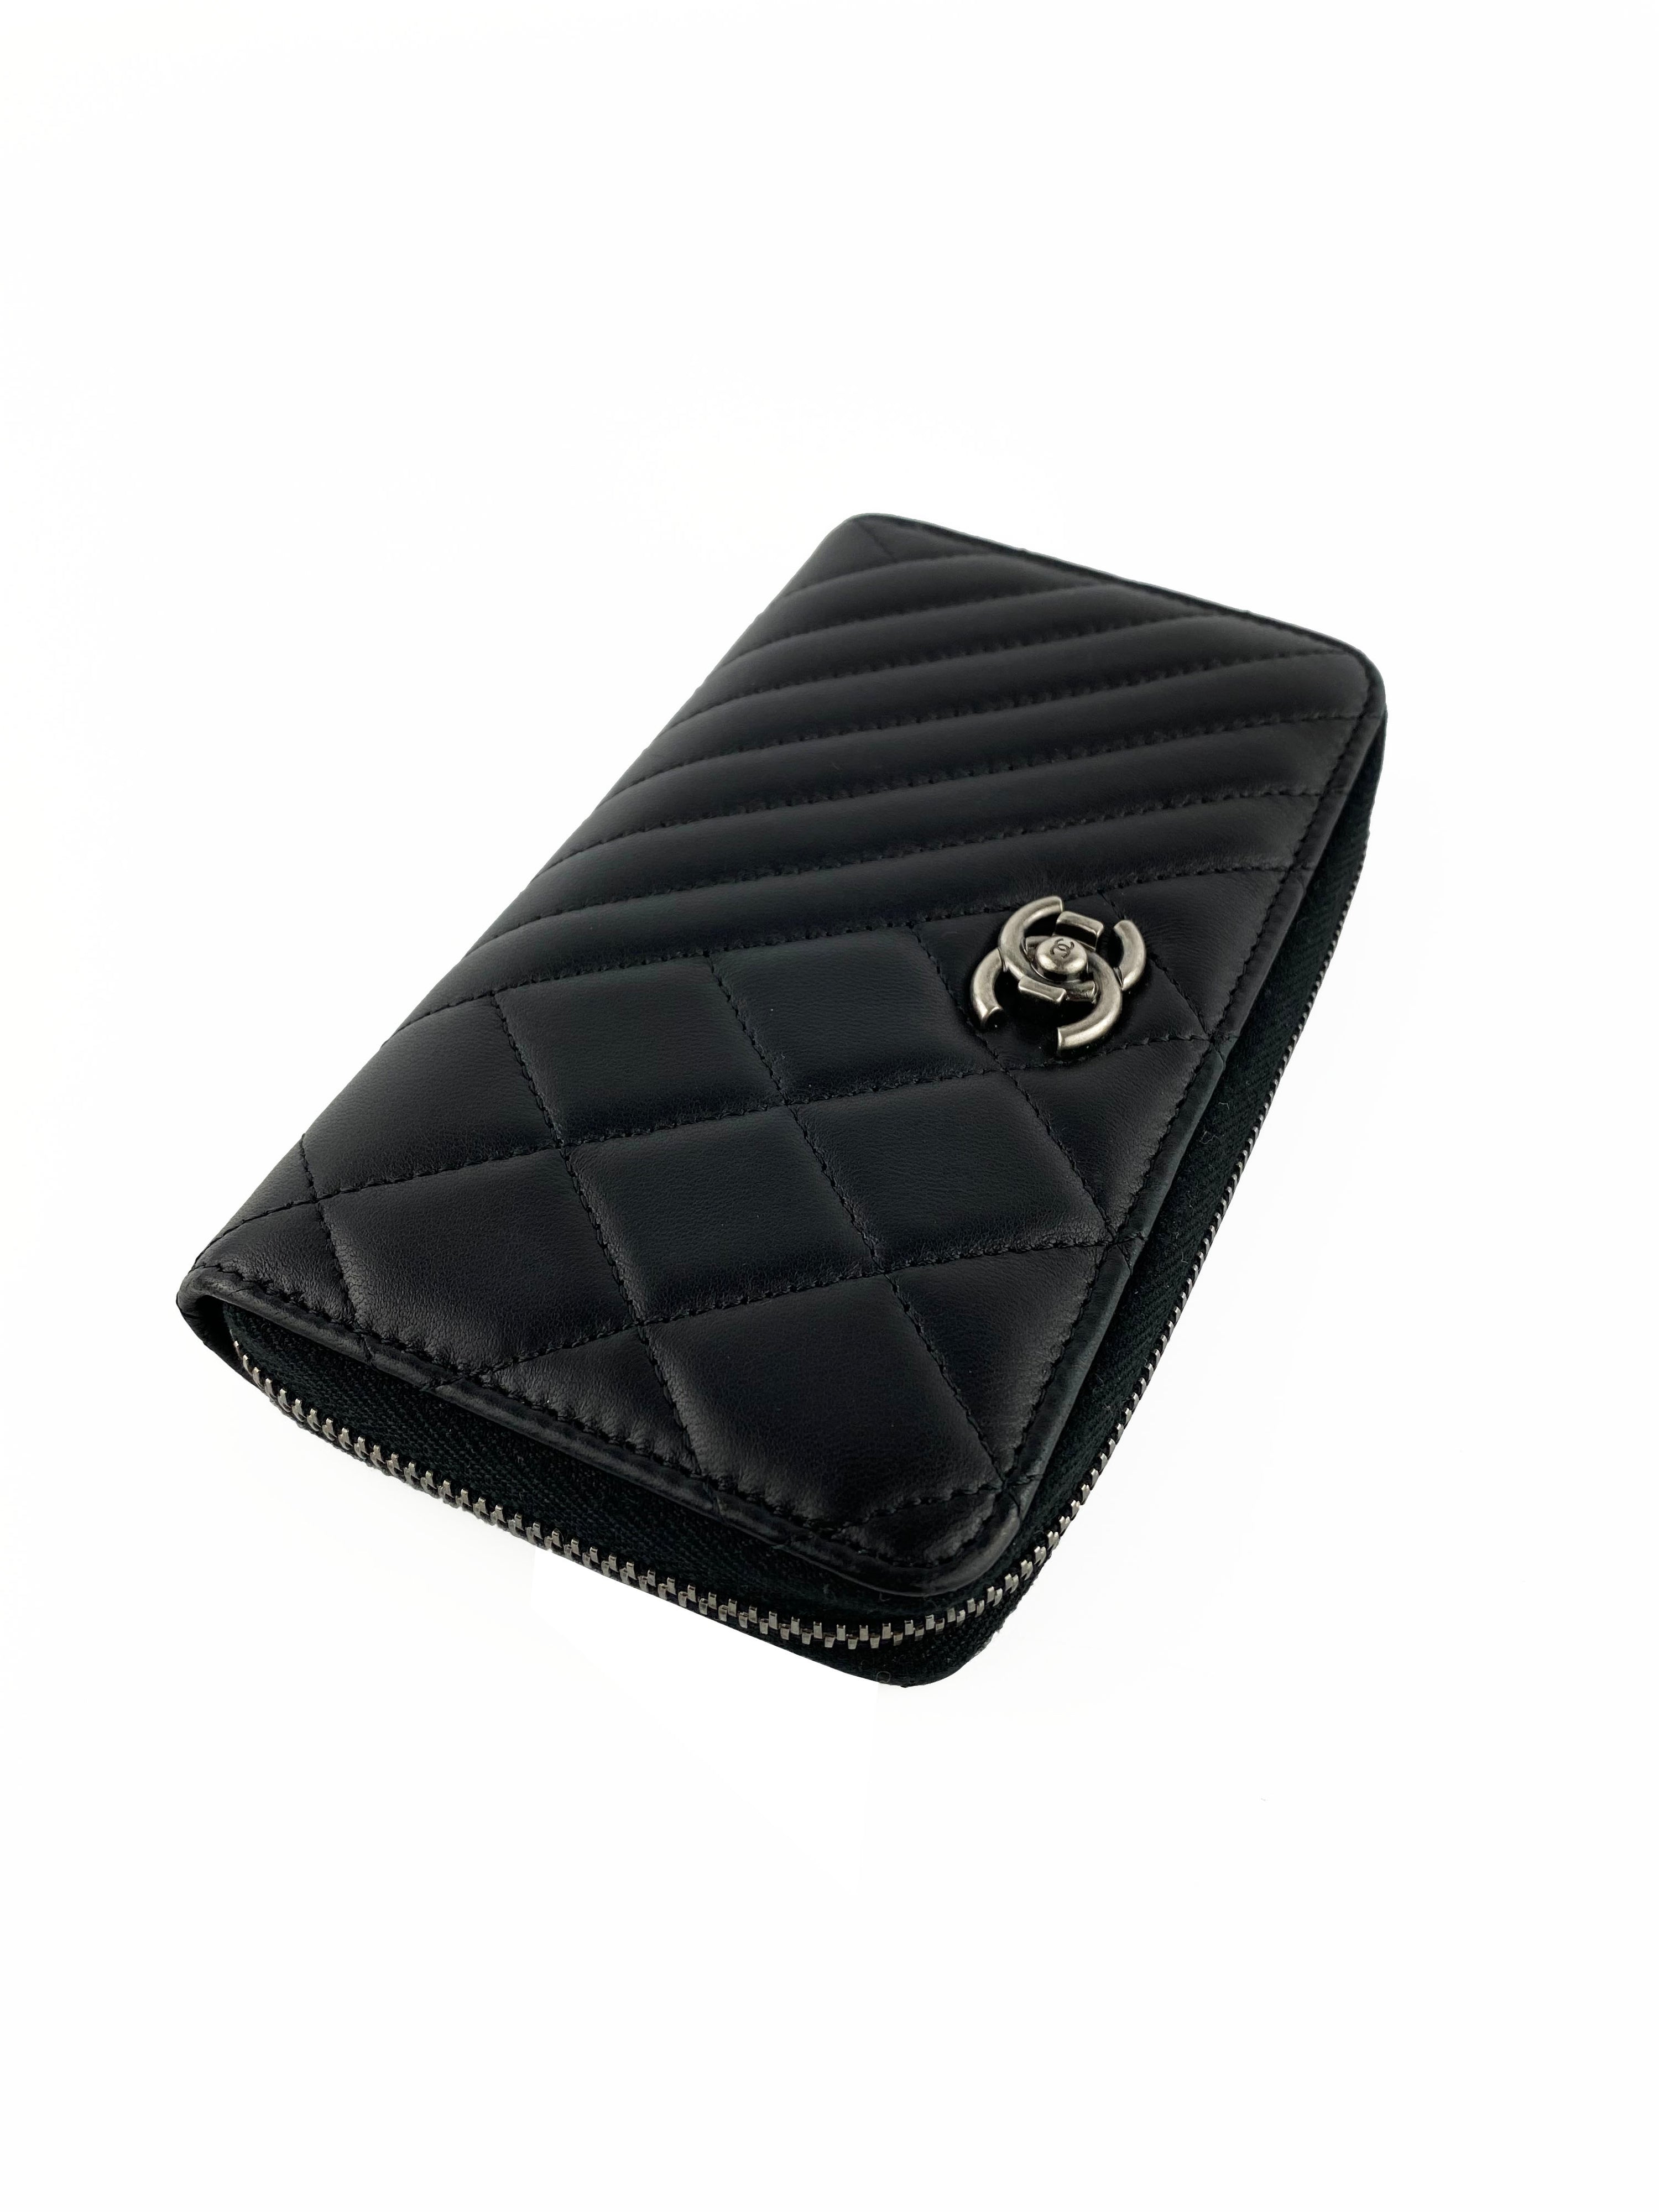 Chanel Black Zipped Lambskin Wallet